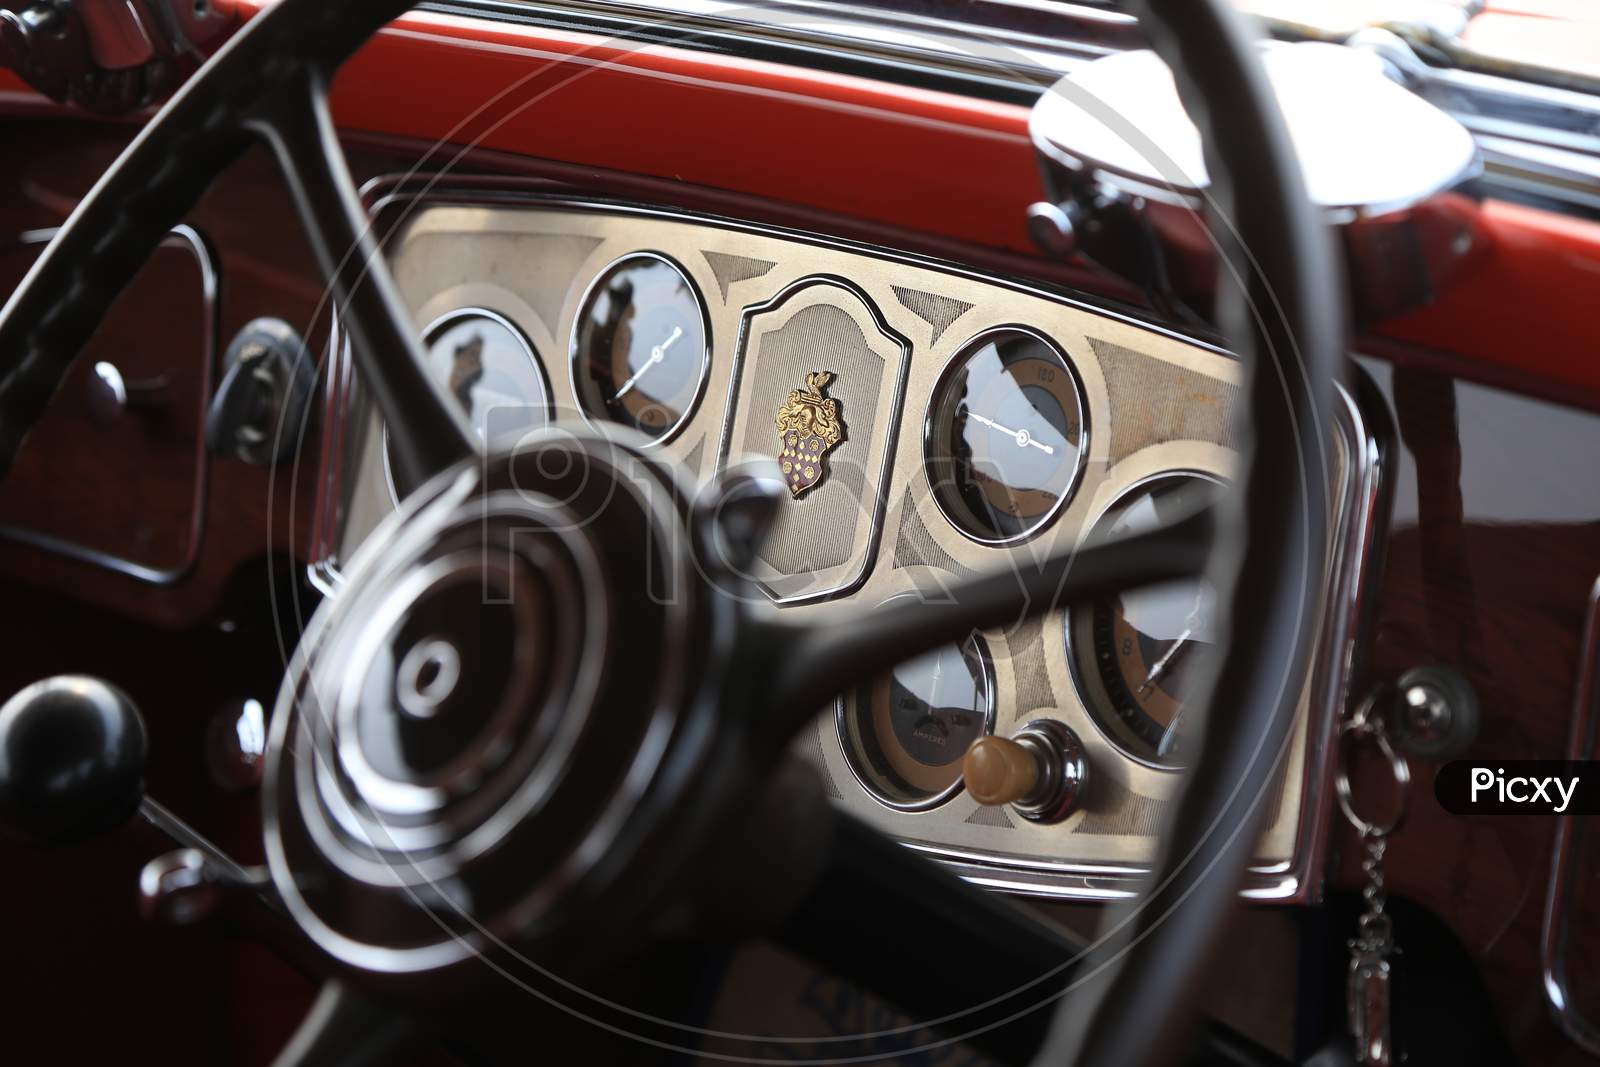 Steering wheel of the Rolls Royce Car